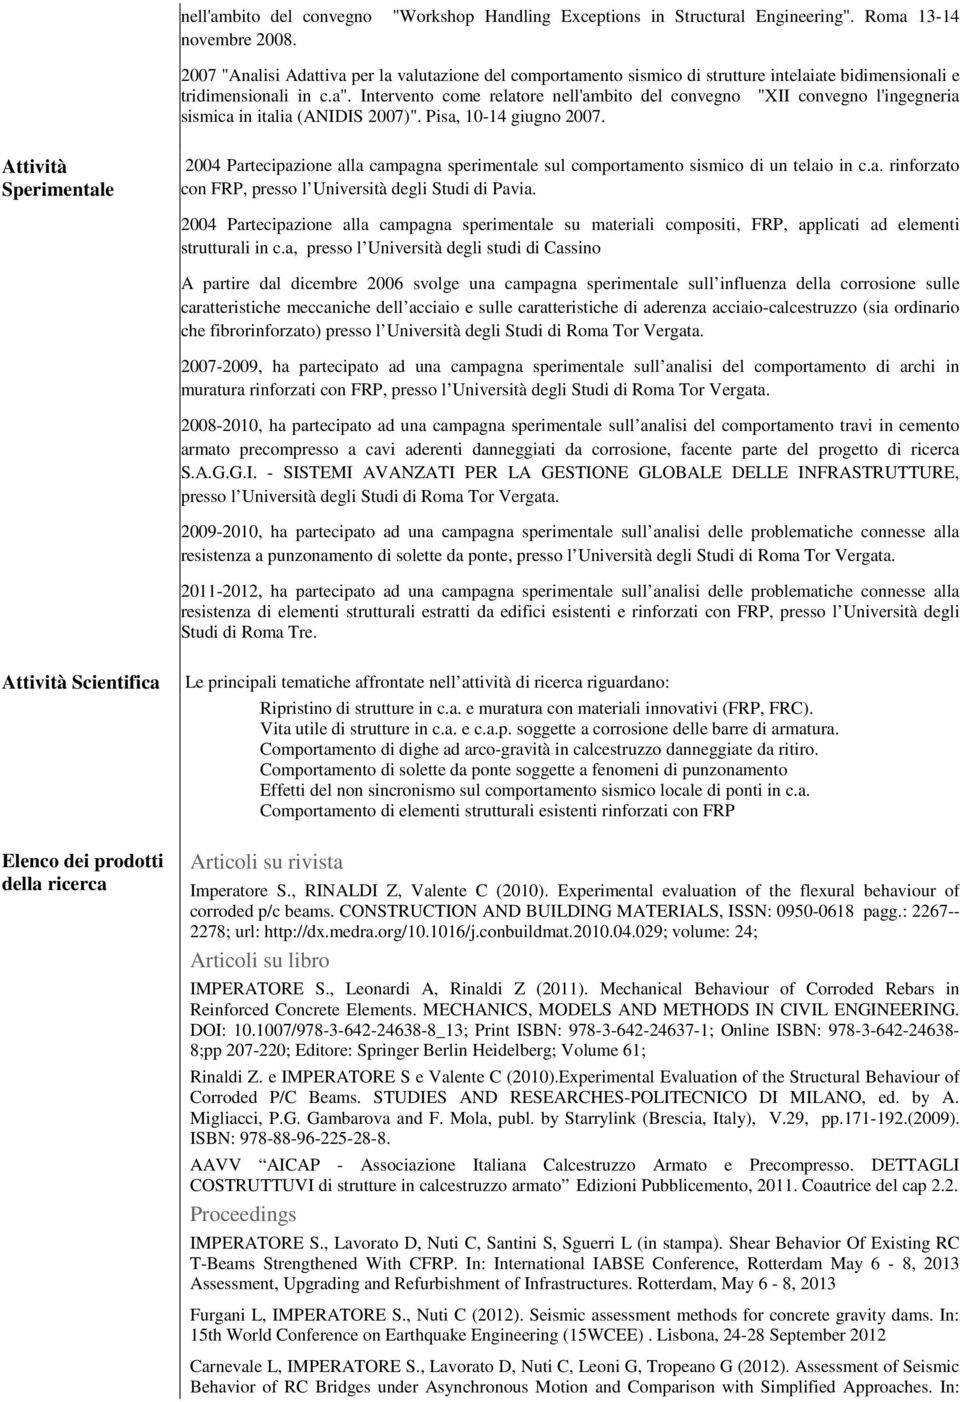 Intervento come relatore nell'ambito del convegno "XII convegno l'ingegneria sismica in italia (ANIDIS 2007)". Pisa, 10-14 giugno 2007.